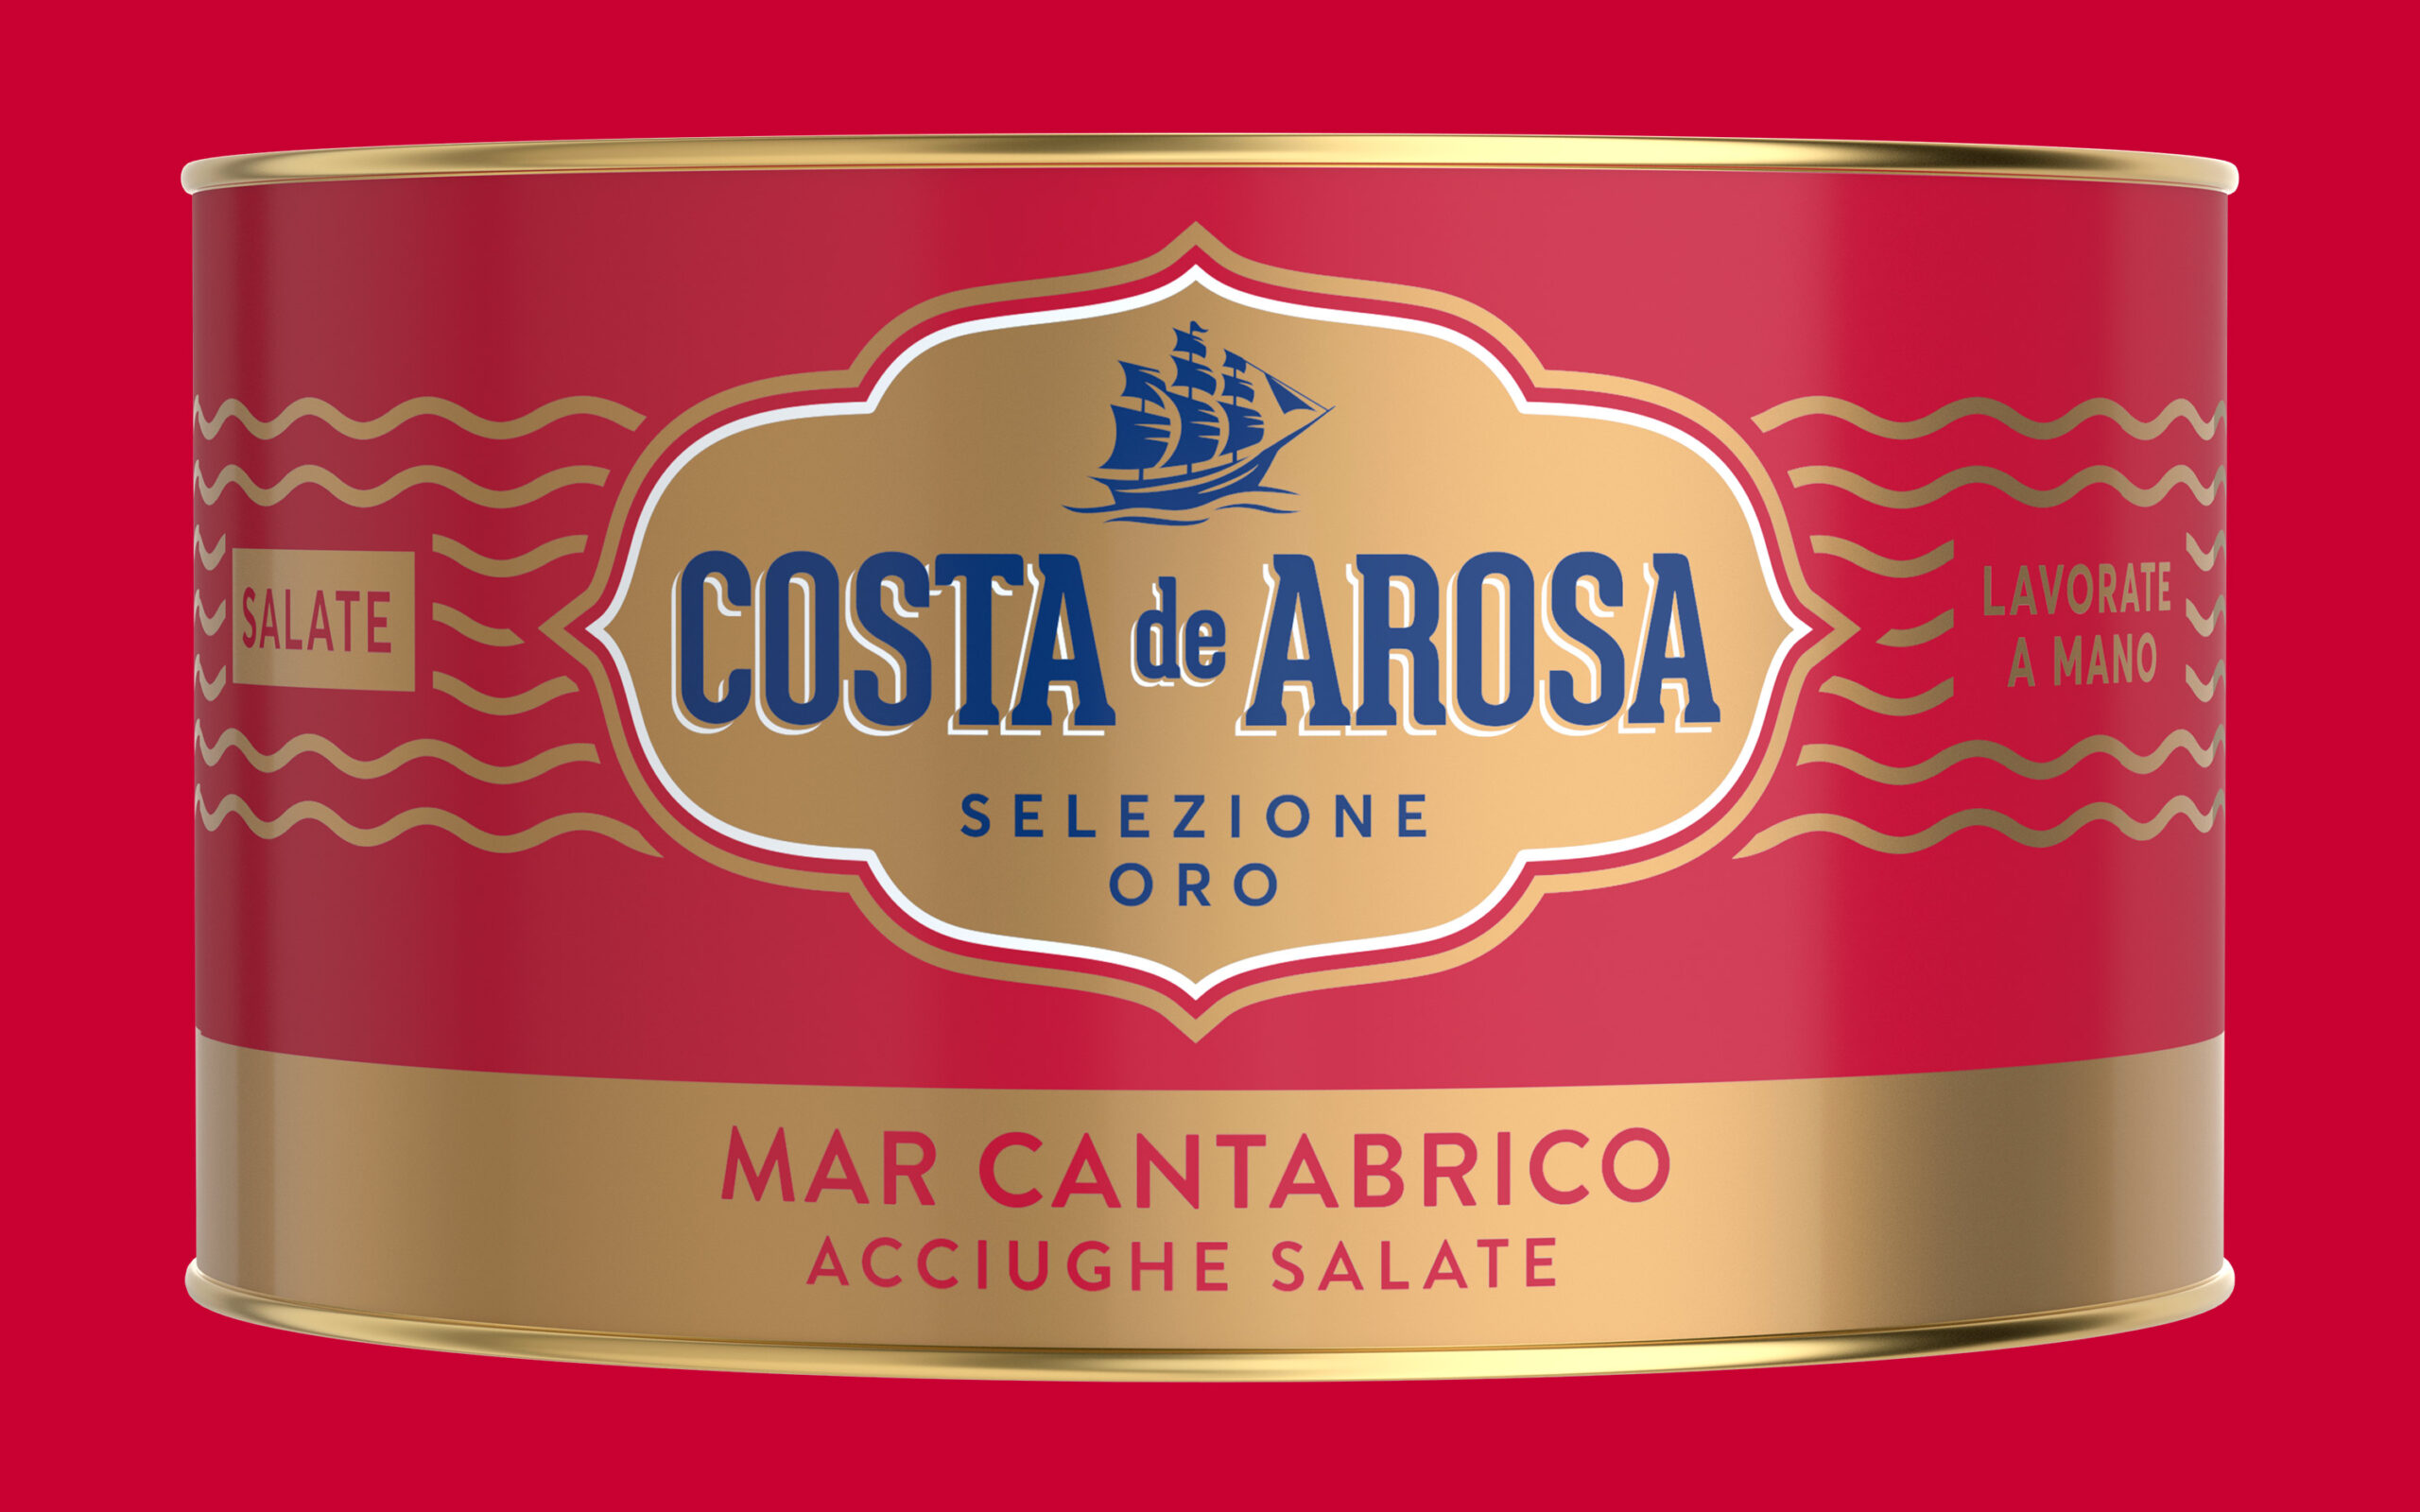 Costa de Arosa package 500